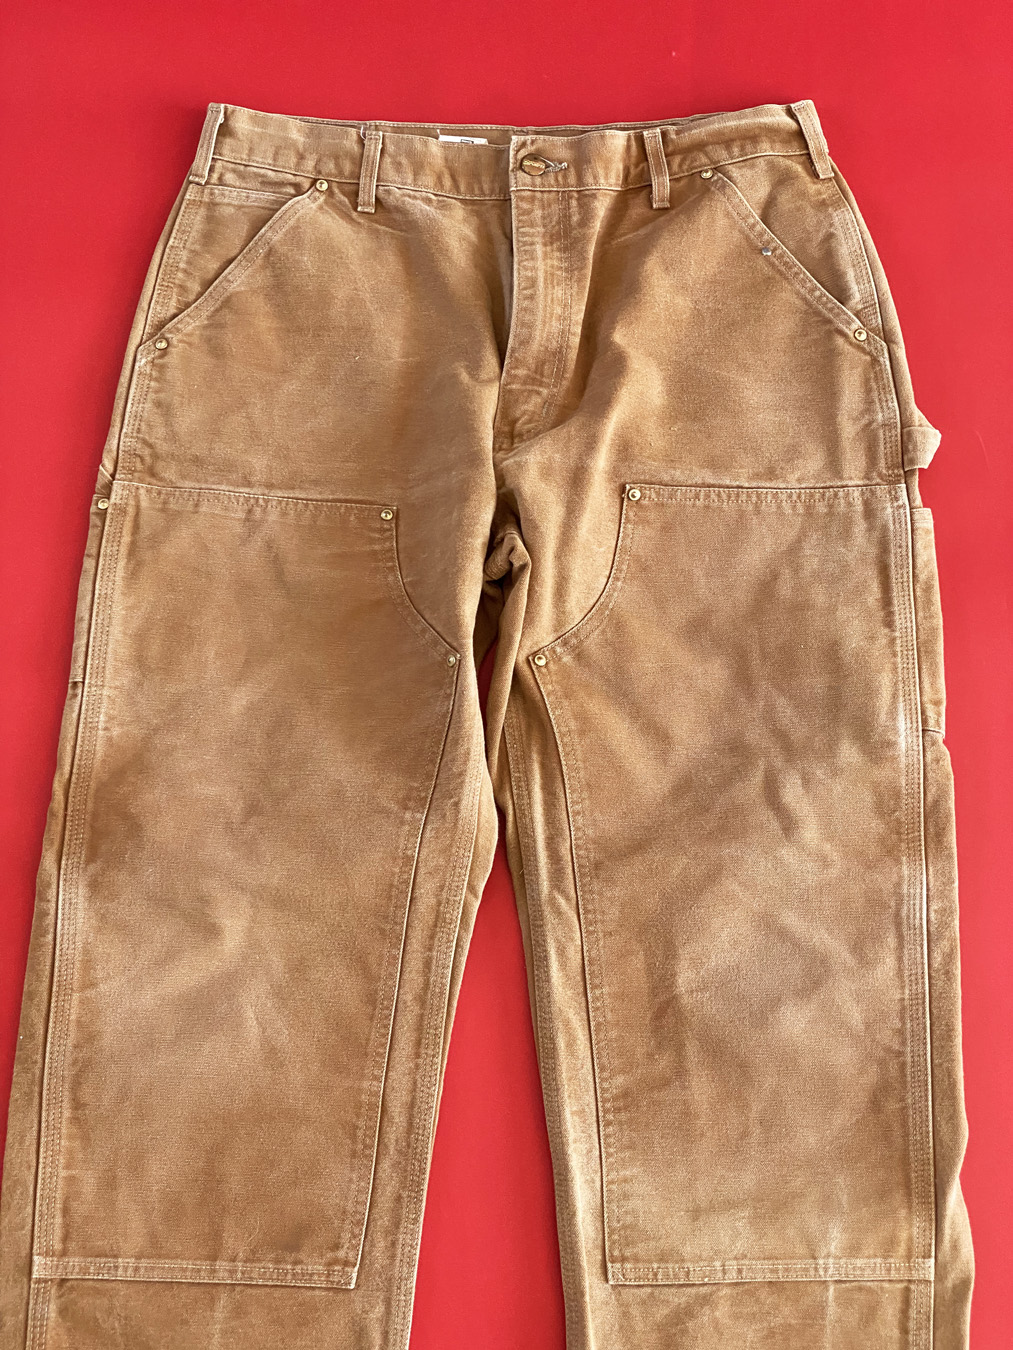 90s Carhartt Brown Double Knee Pants - 5 Star Vintage